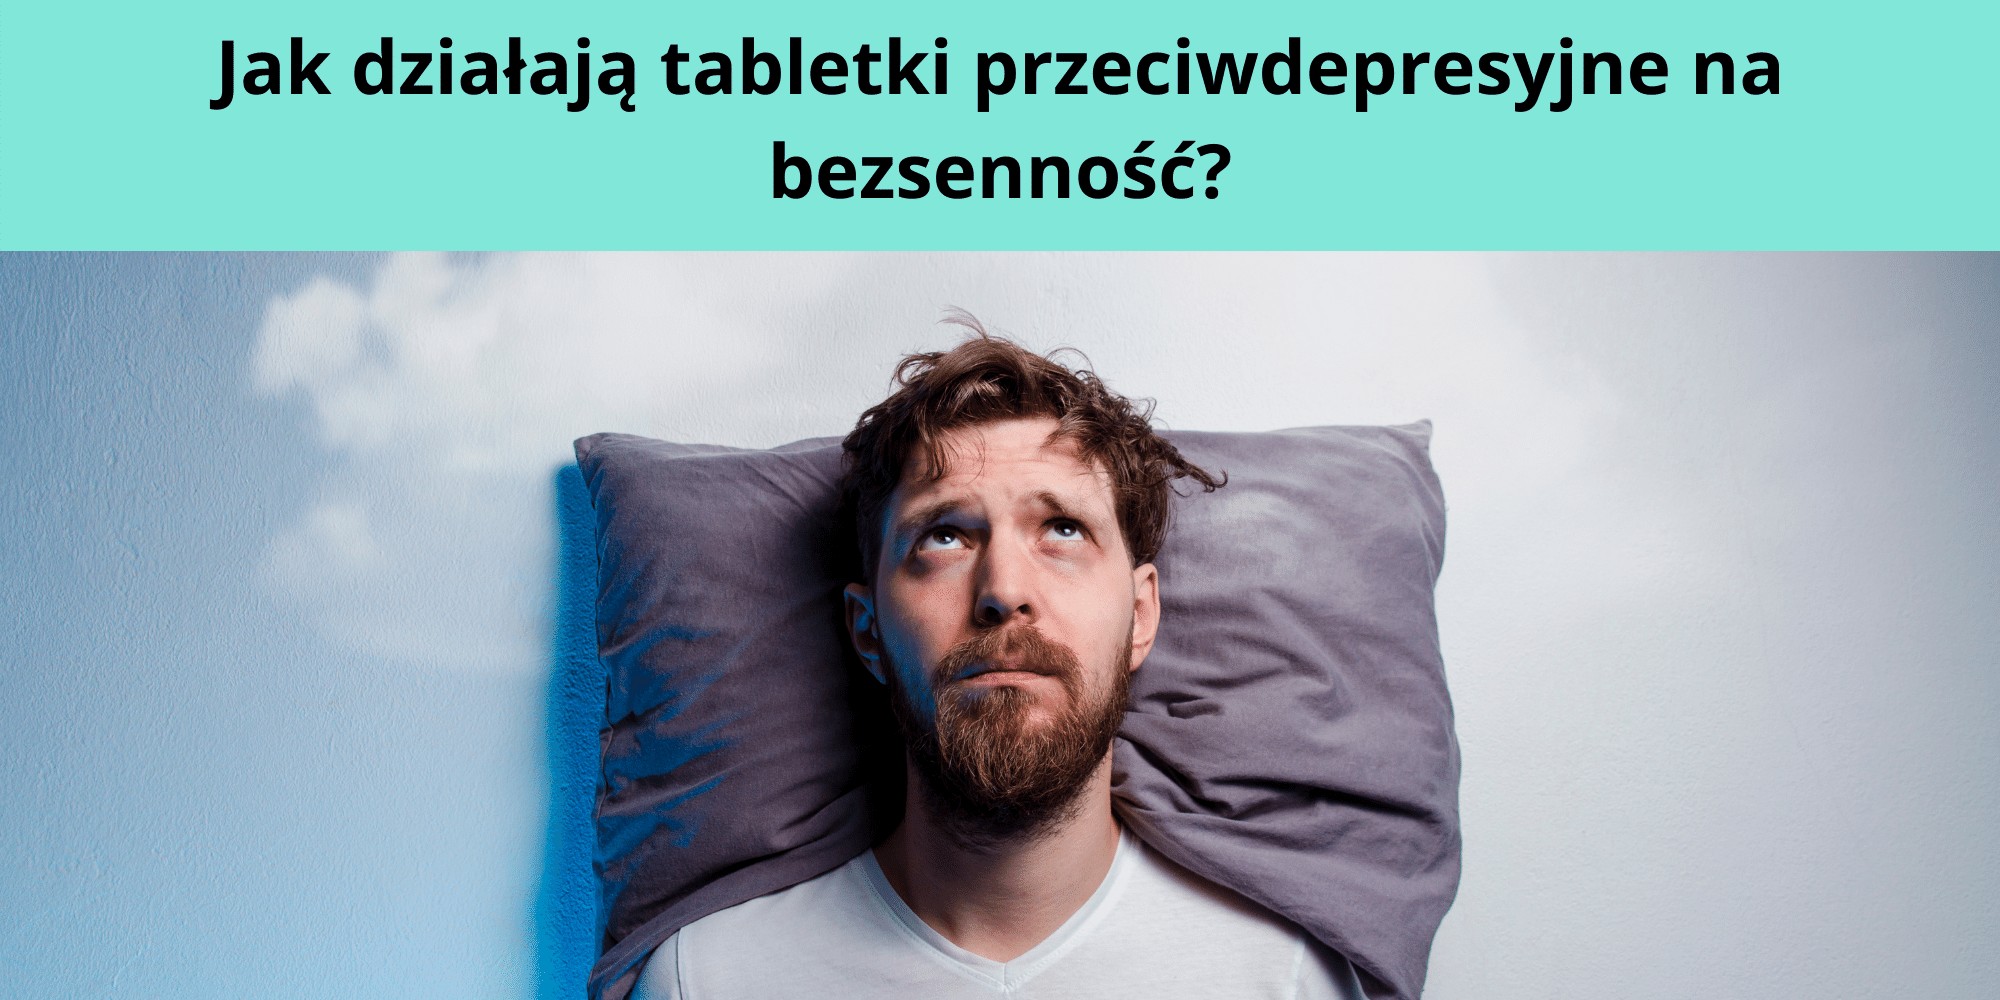 Jak działają tabletki przeciwdepresyjne na bezsenność?